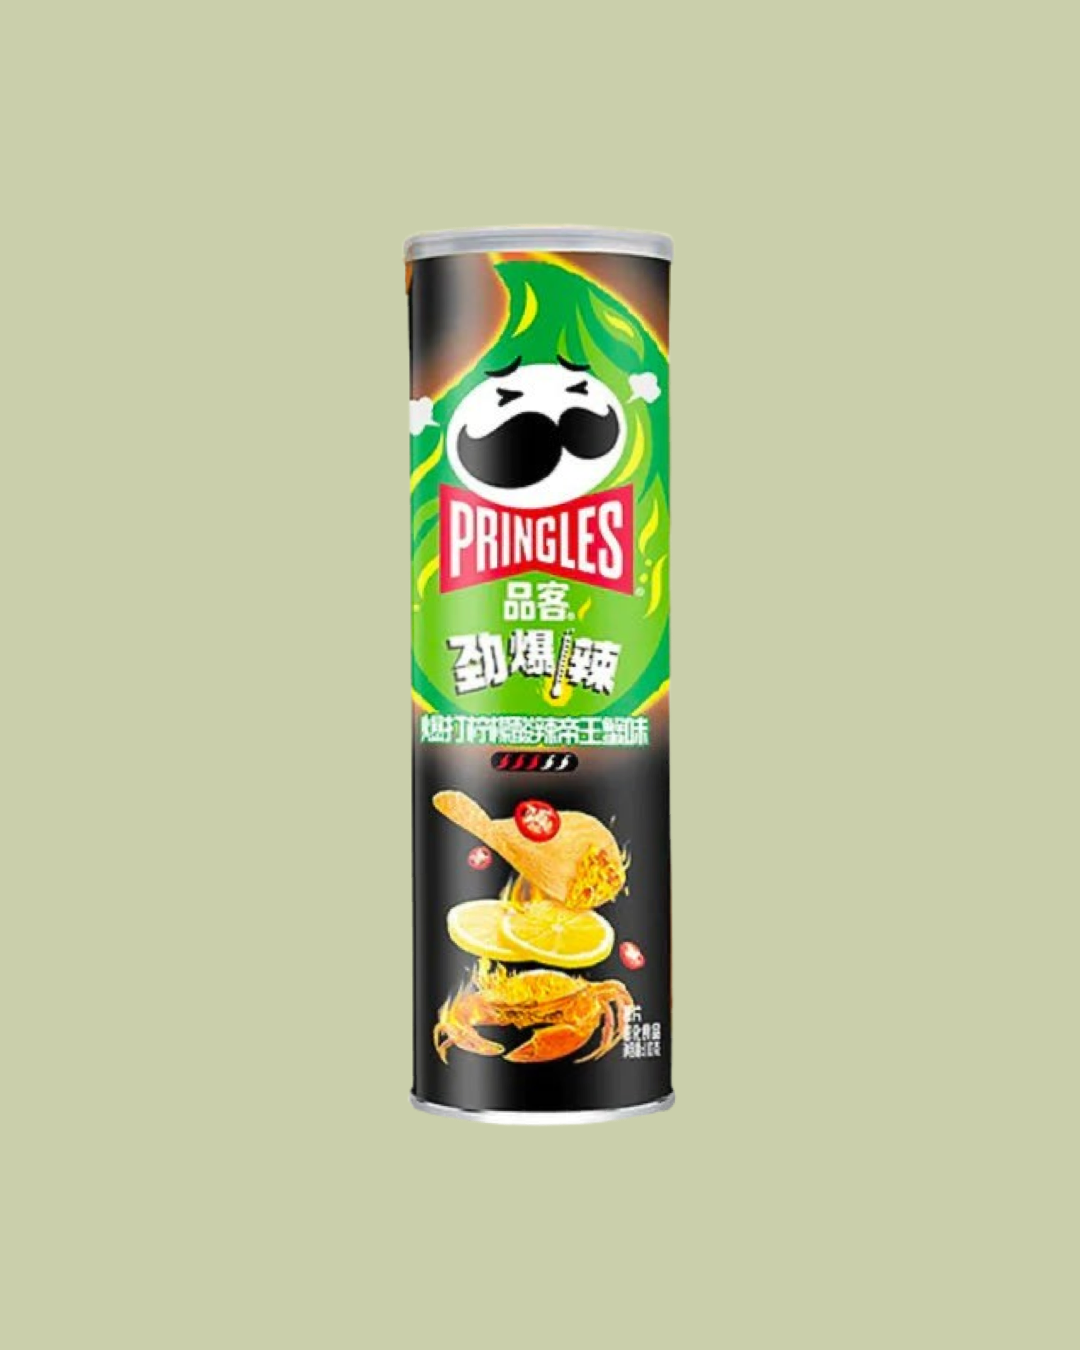 Pringles Super Hot Chili Lemon Crab (China)